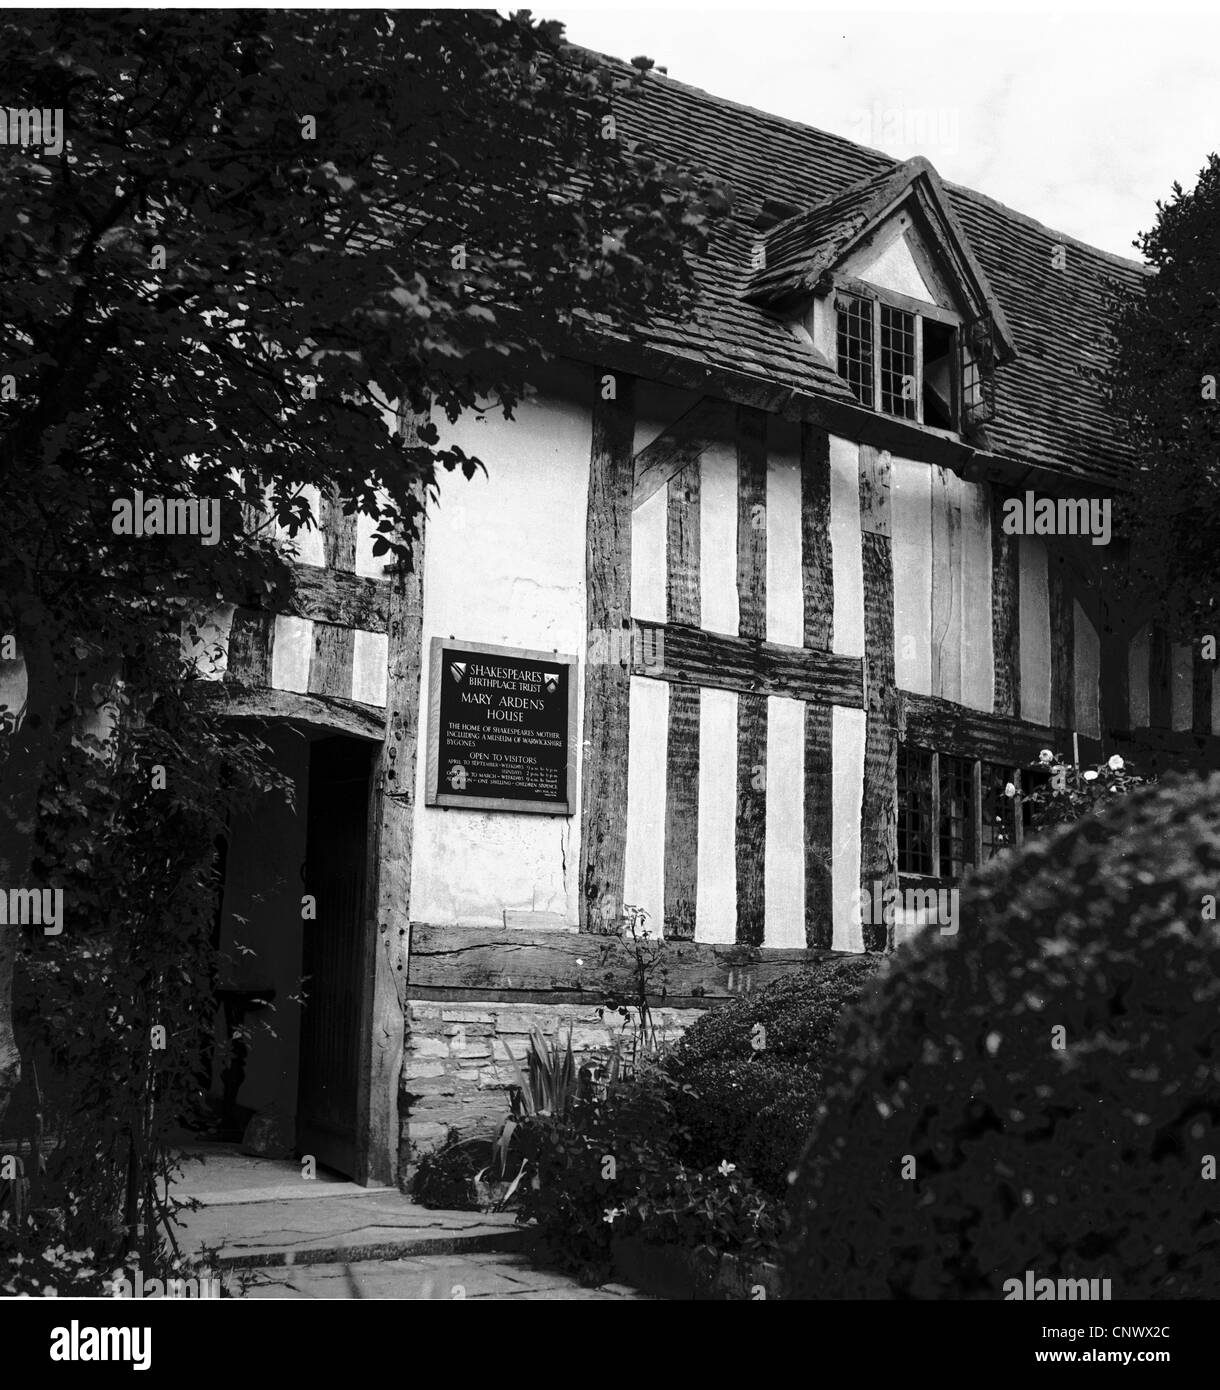 Un quadro storico da1950s che mostra la parte esterna di Mary Arden's House di Stratford, la madre di William Shakespeare. Foto Stock